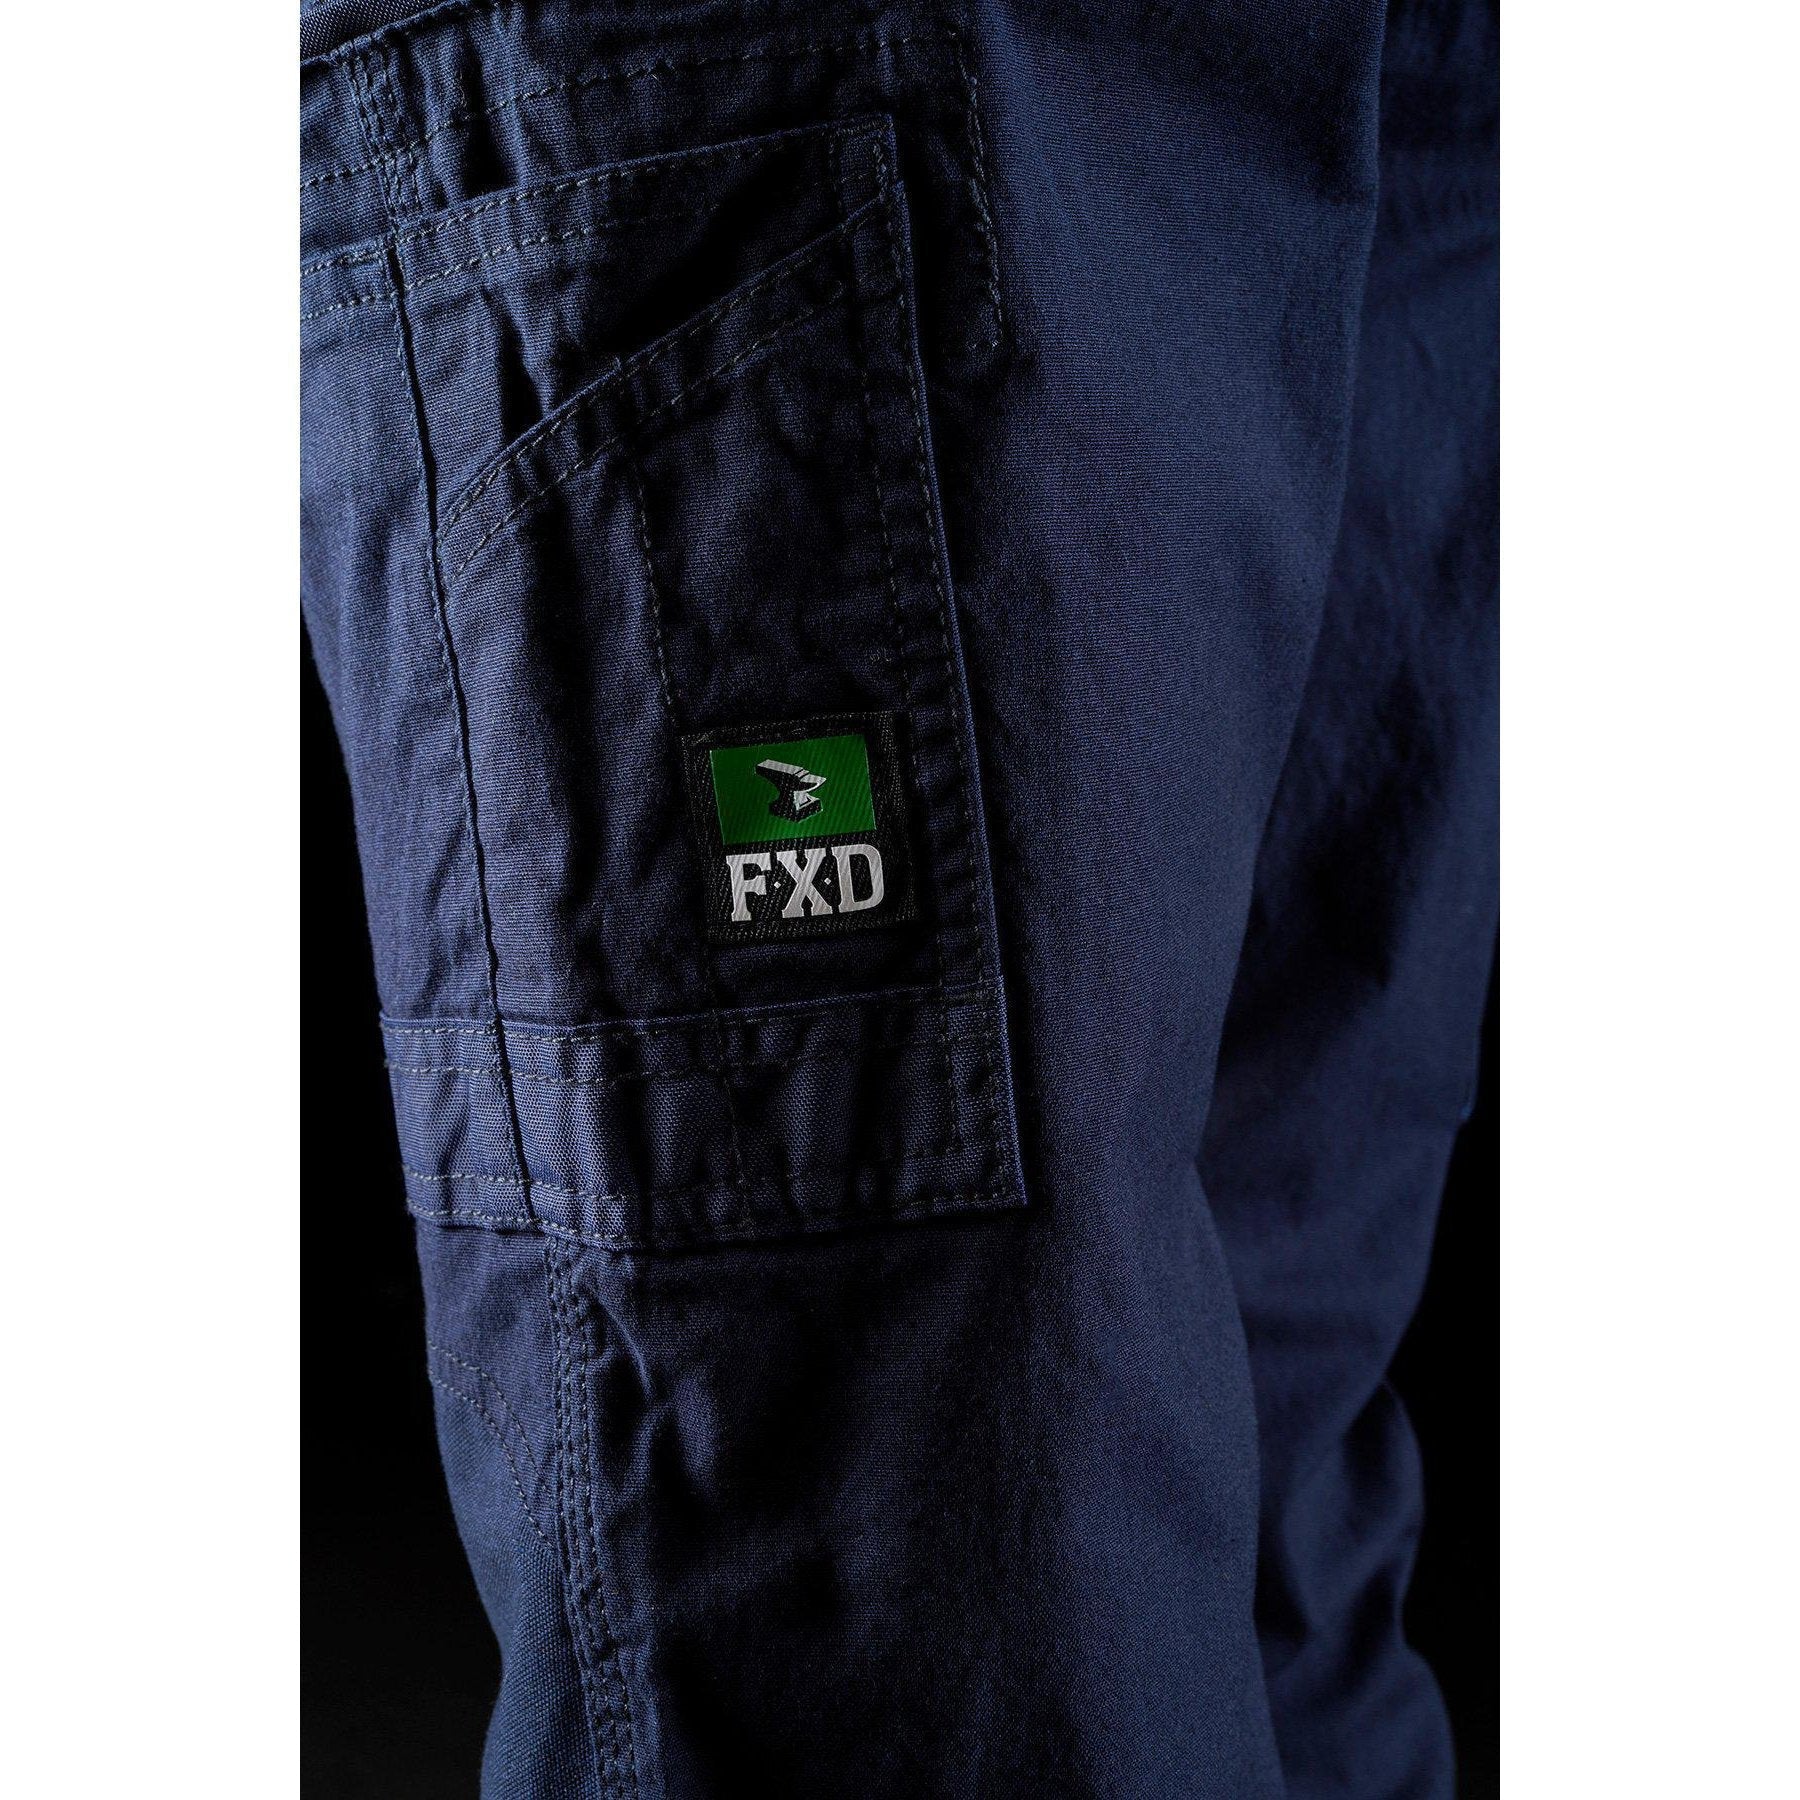 FXD Womens Stretch Work Pants - WP-3W | Womens Workwear